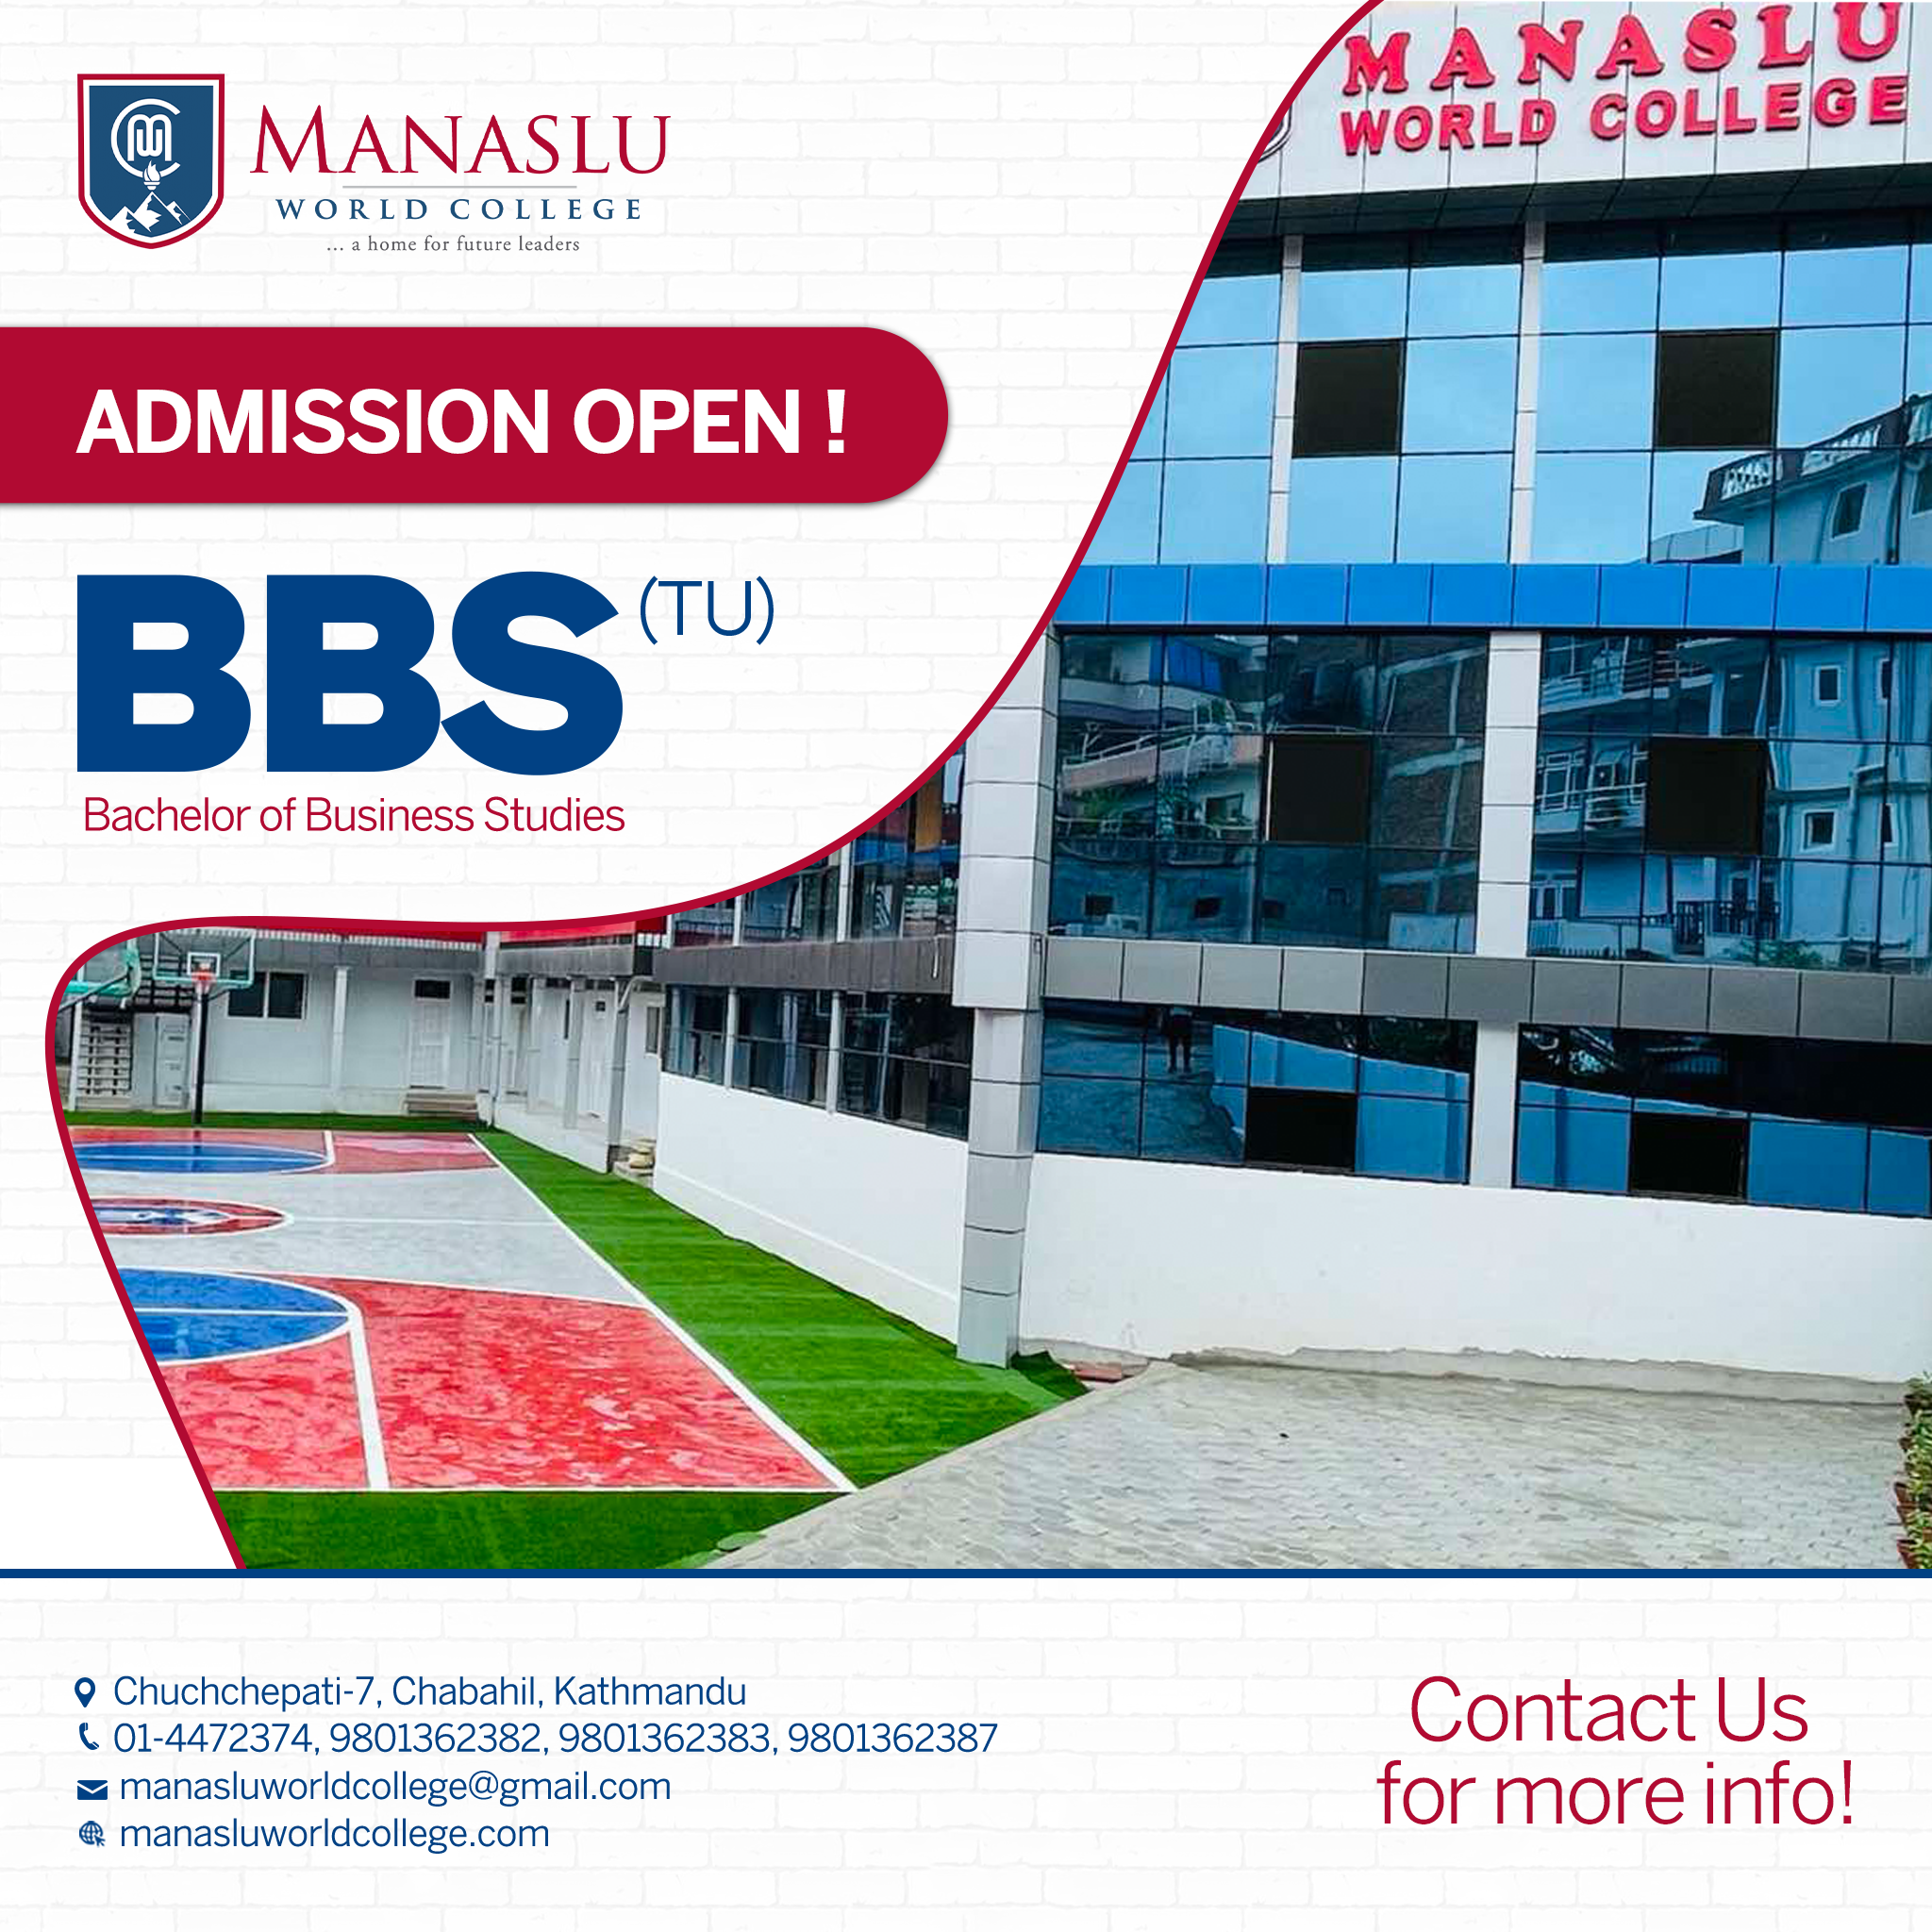 Manaslu World College Admission Open